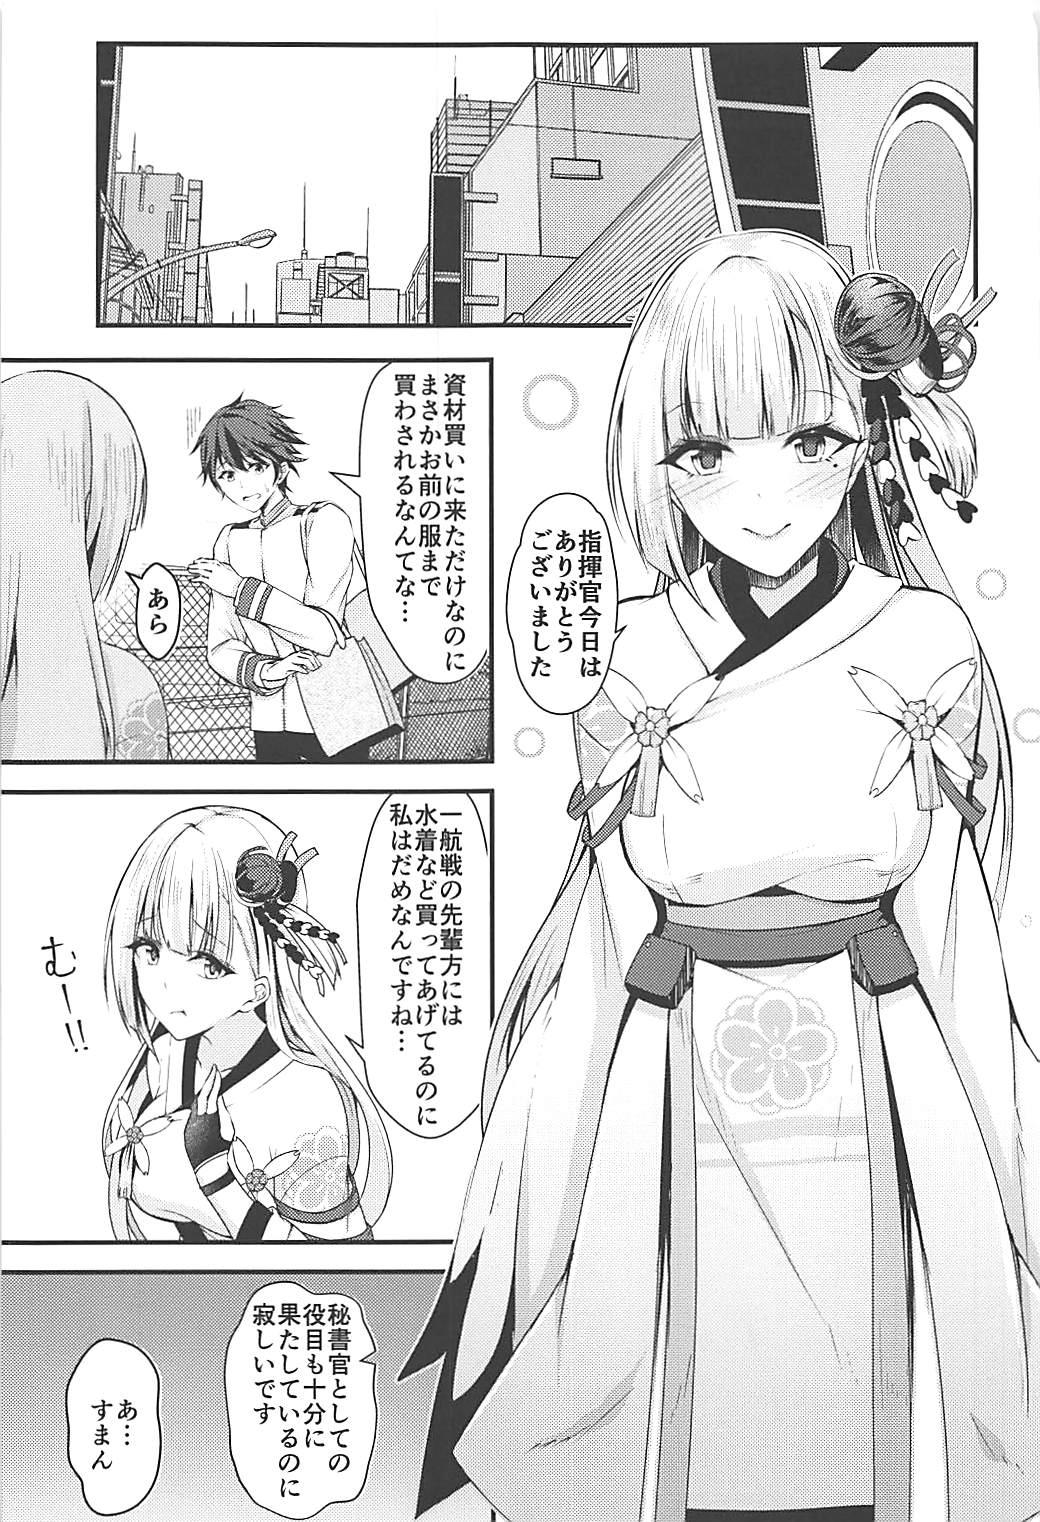 Blowing Ecchi na Shoukaku wa Dame desu ka? - Azur lane HD - Page 2